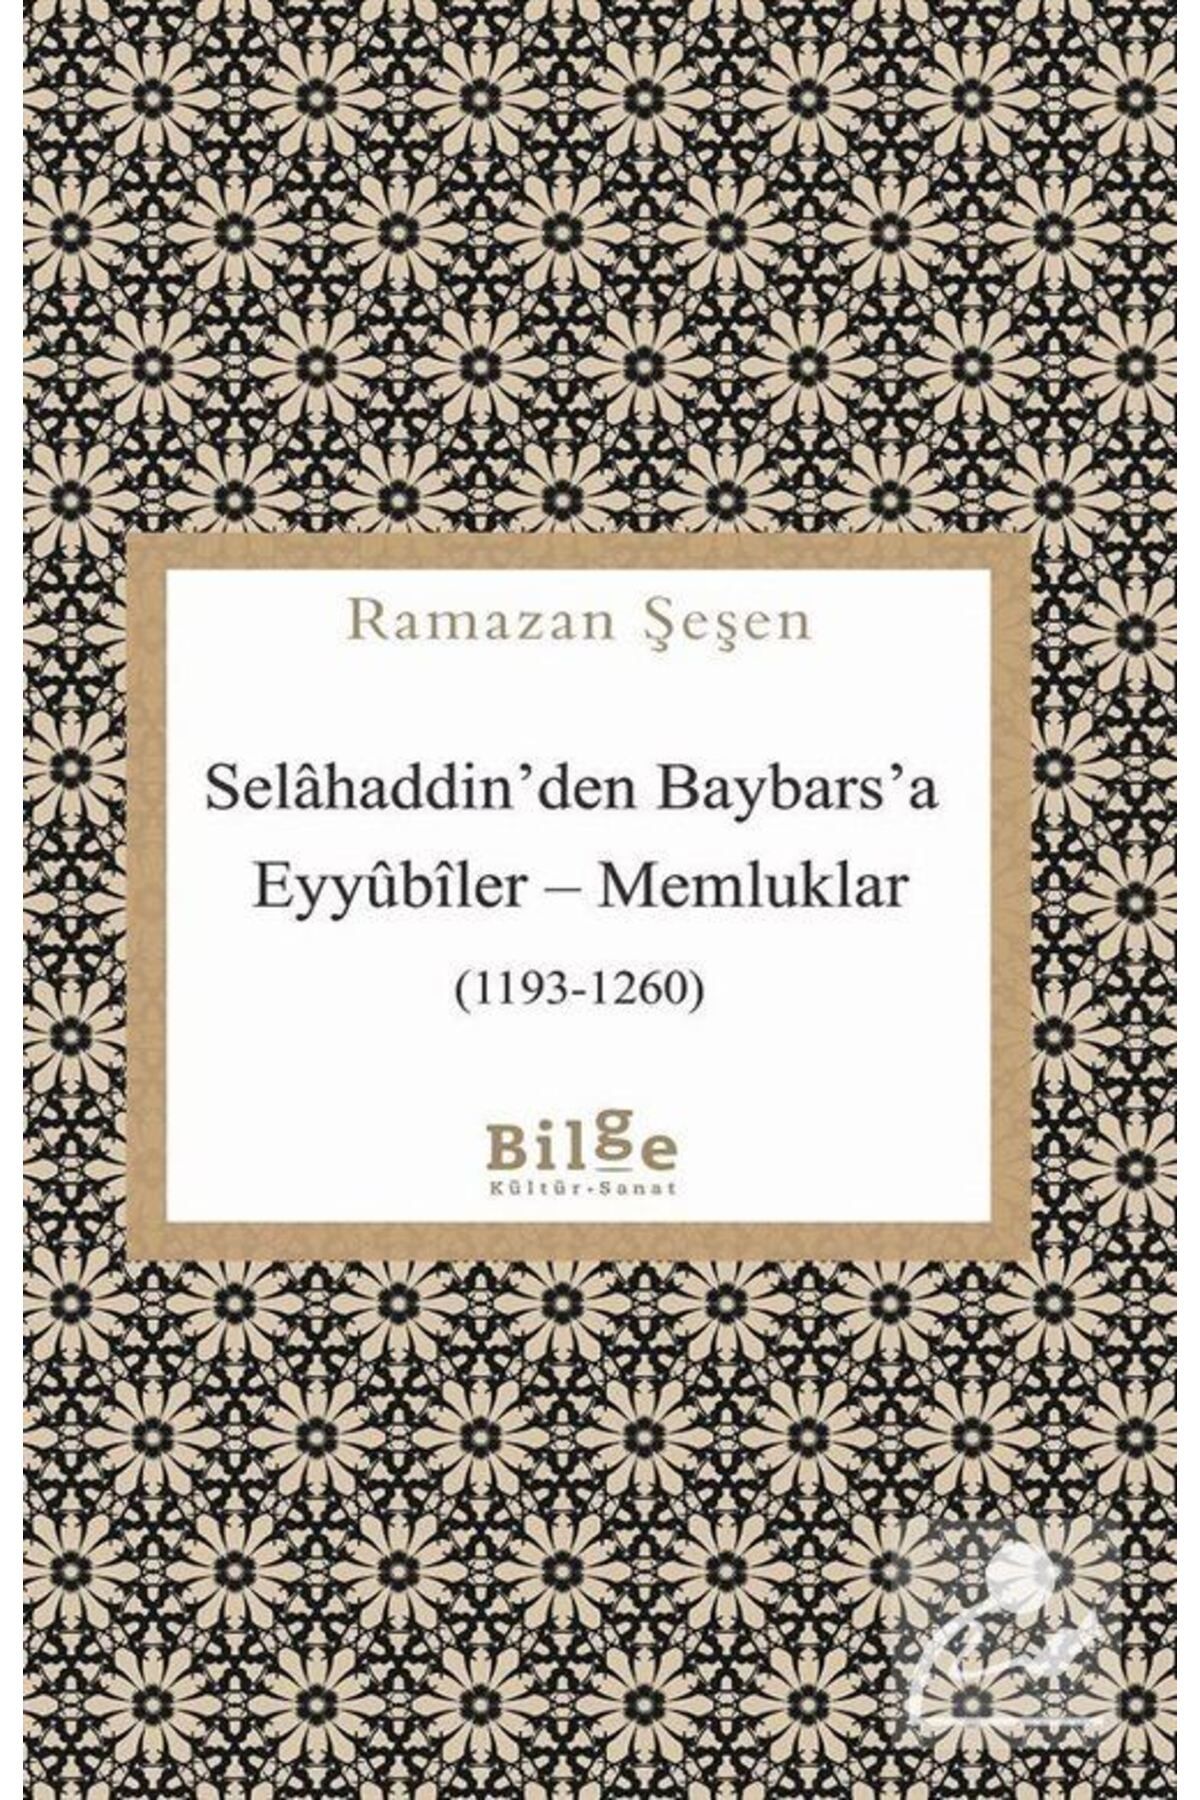 Bilge Kültür Sanat Selahaddin’den Baybars’a Eyyubiler – Memluklar (1193-1260) kitabı - Ramazan Şeşen - Bilge Kültür San